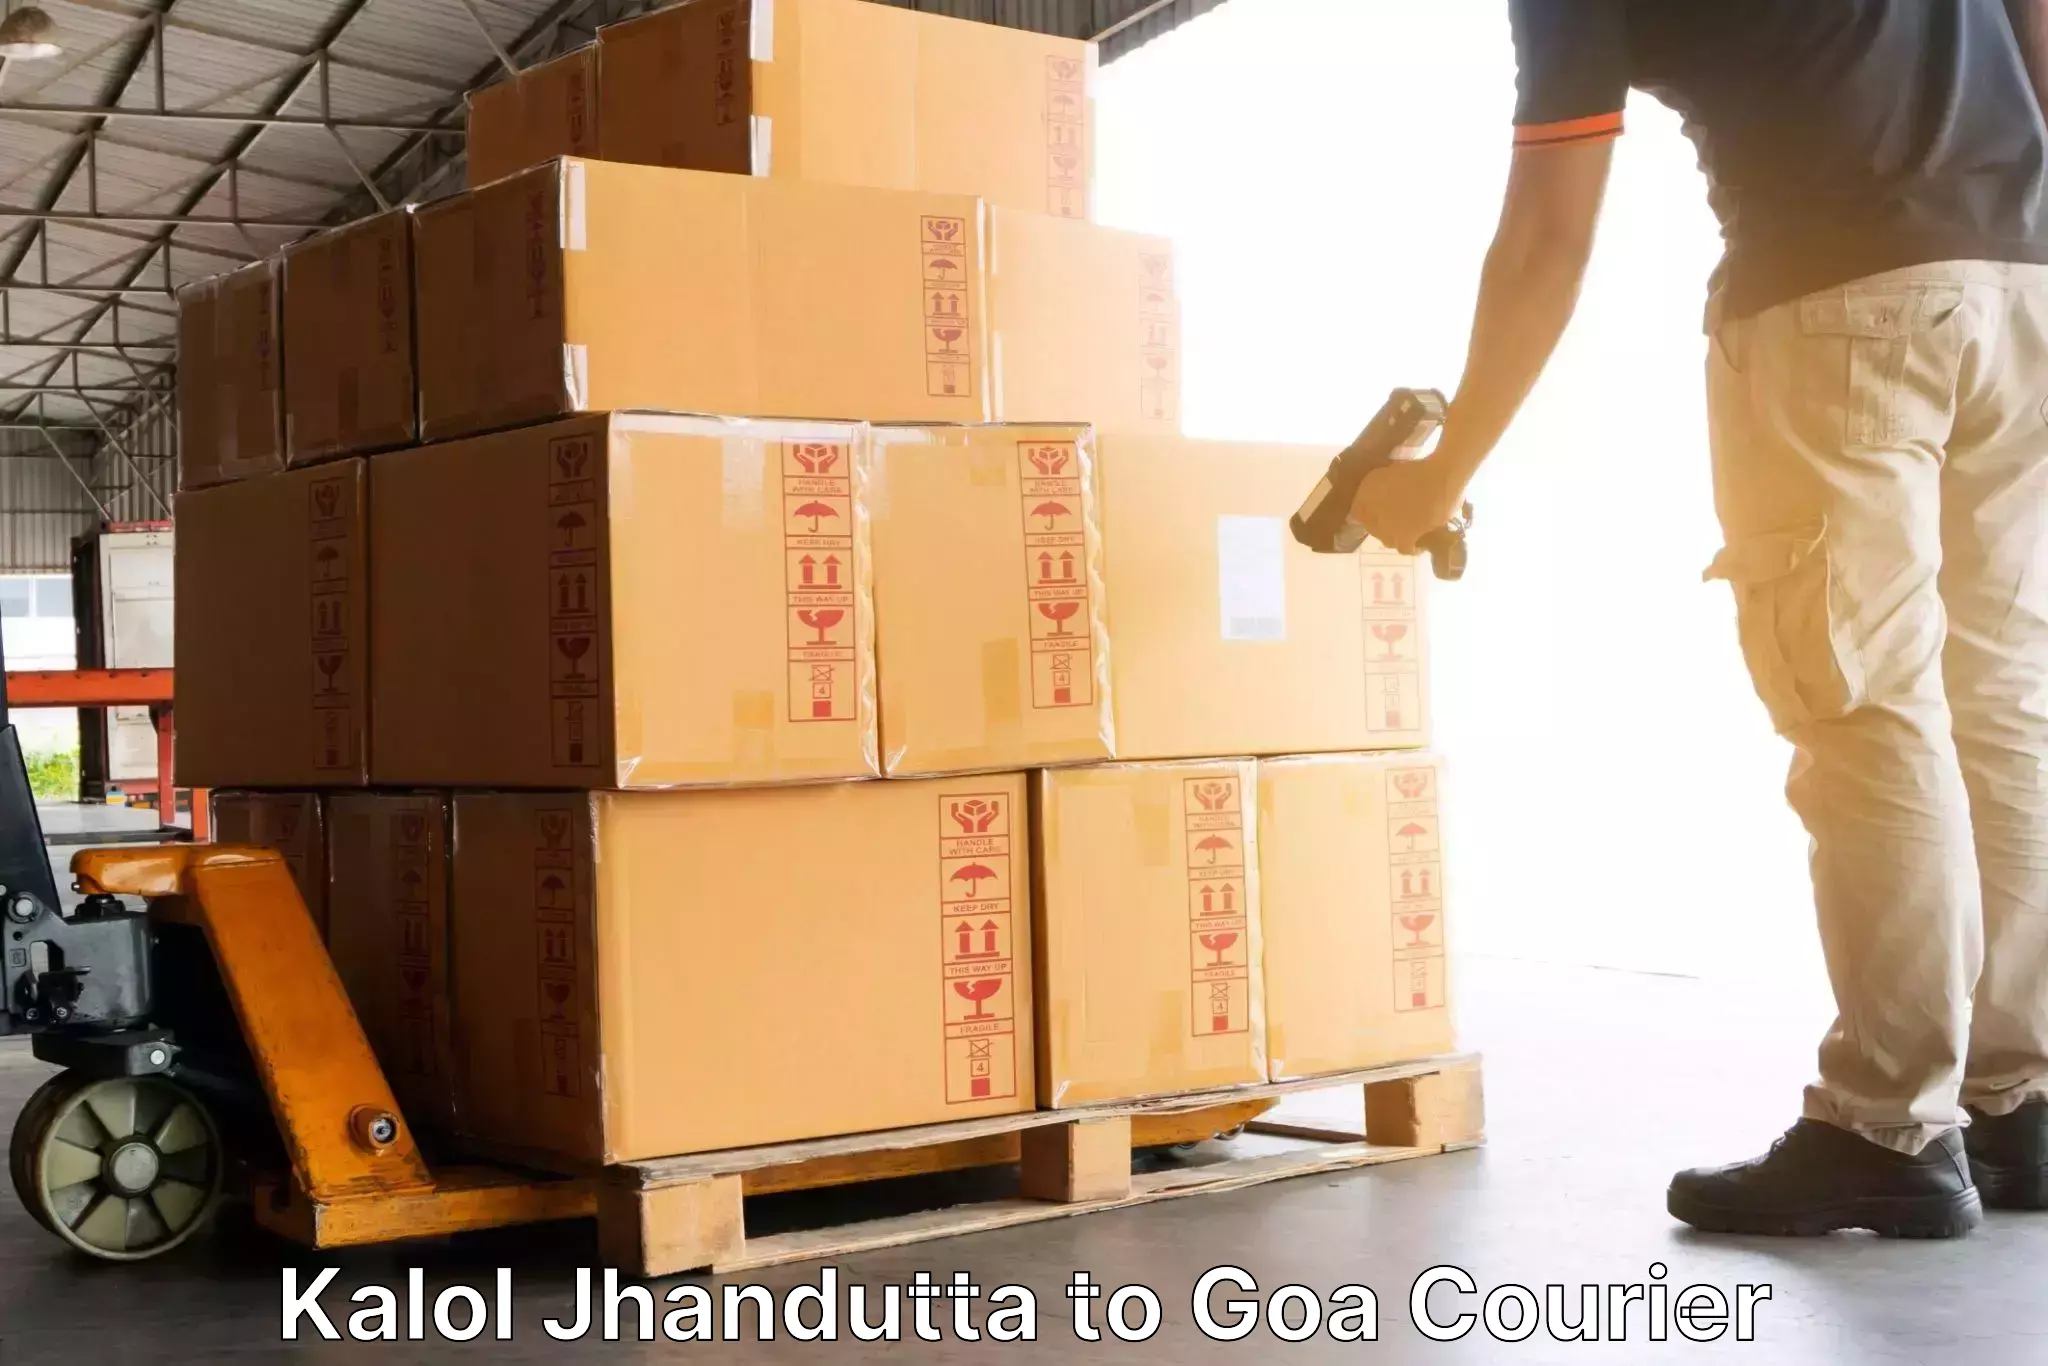 Efficient freight service Kalol Jhandutta to Bicholim